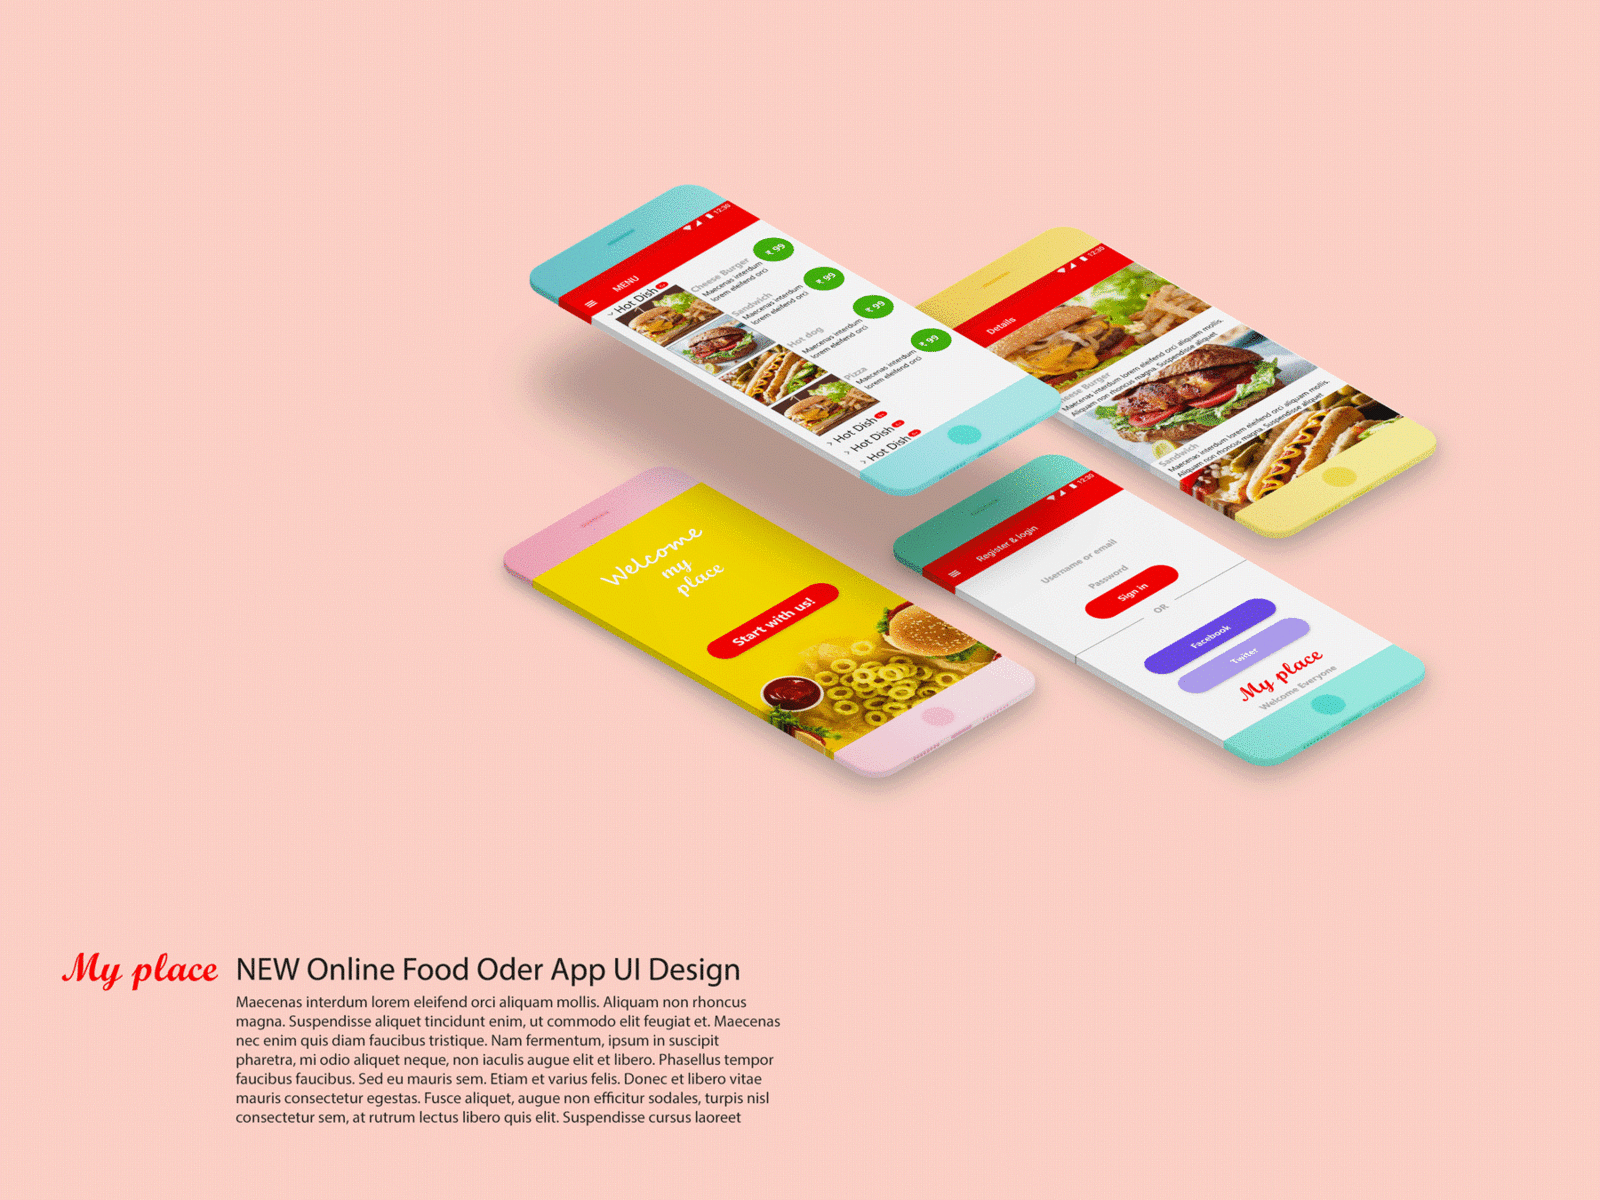 NEW Online Food Order App UI Design